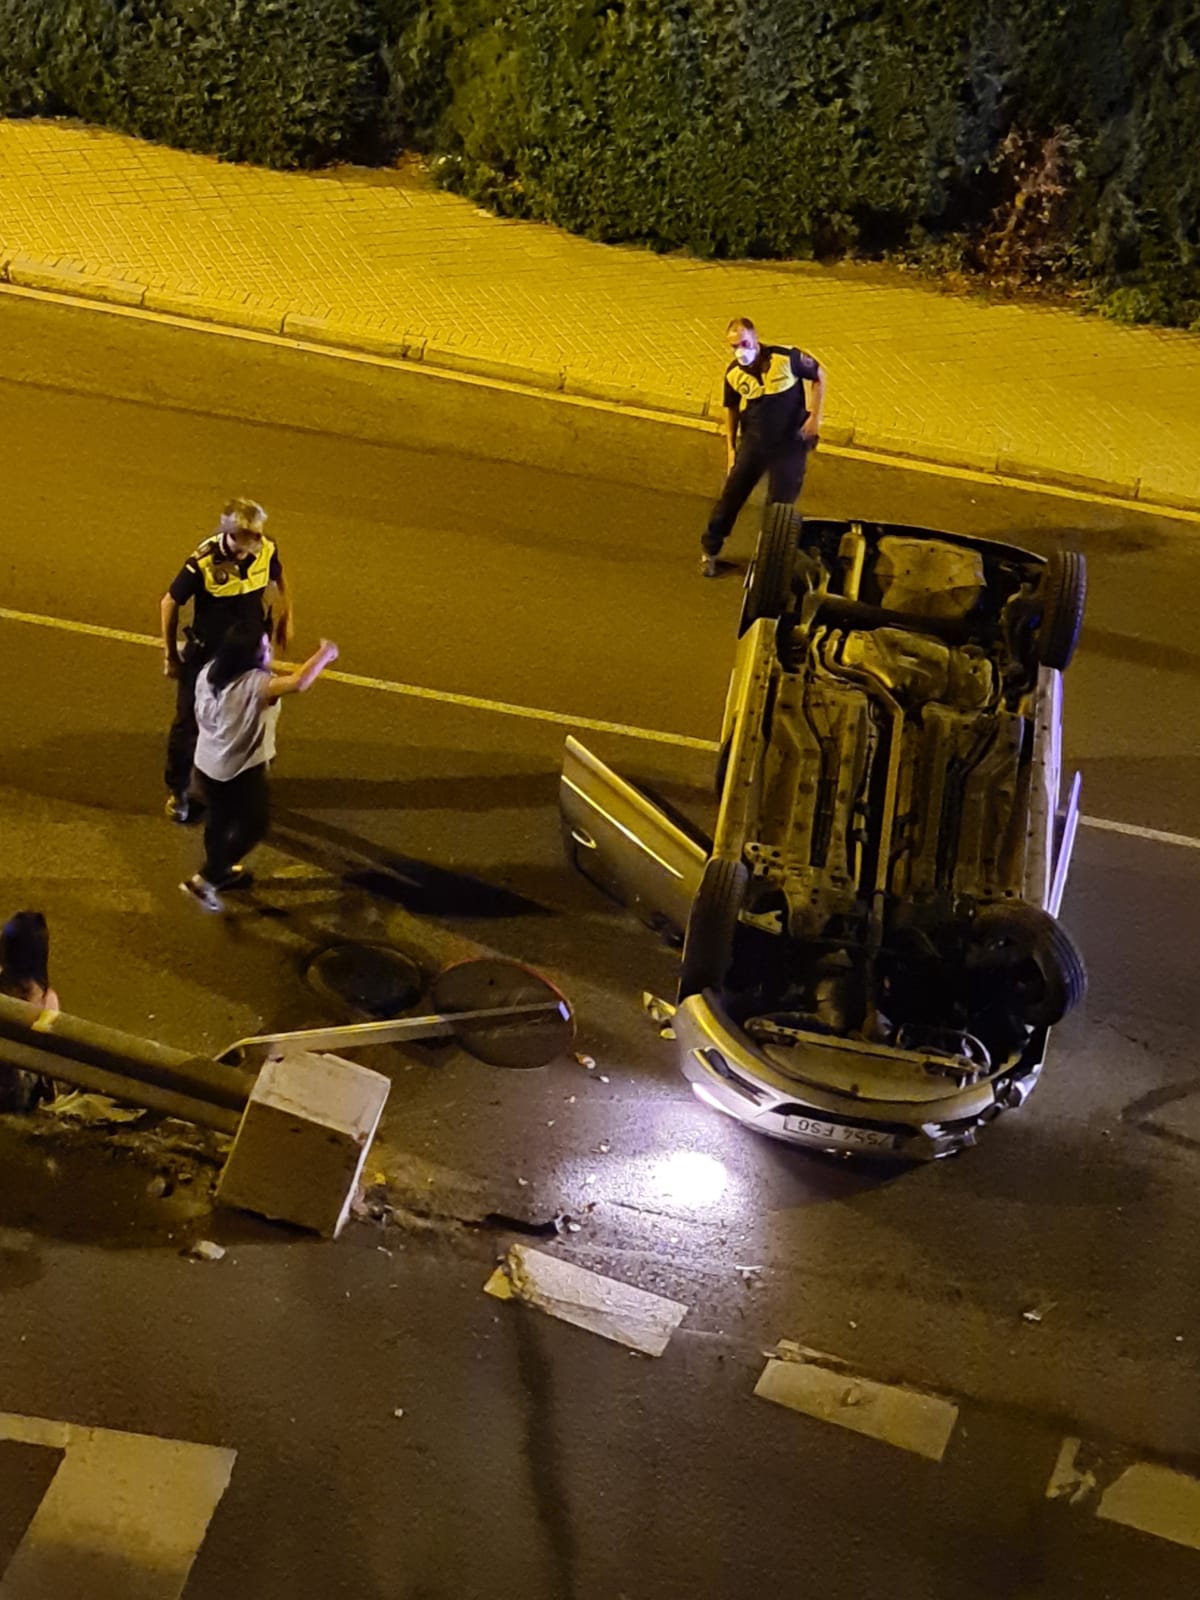 La testigo del accidente de Majadahonda: “la conductora estaba borracha, dio 0.7 de alcotest”